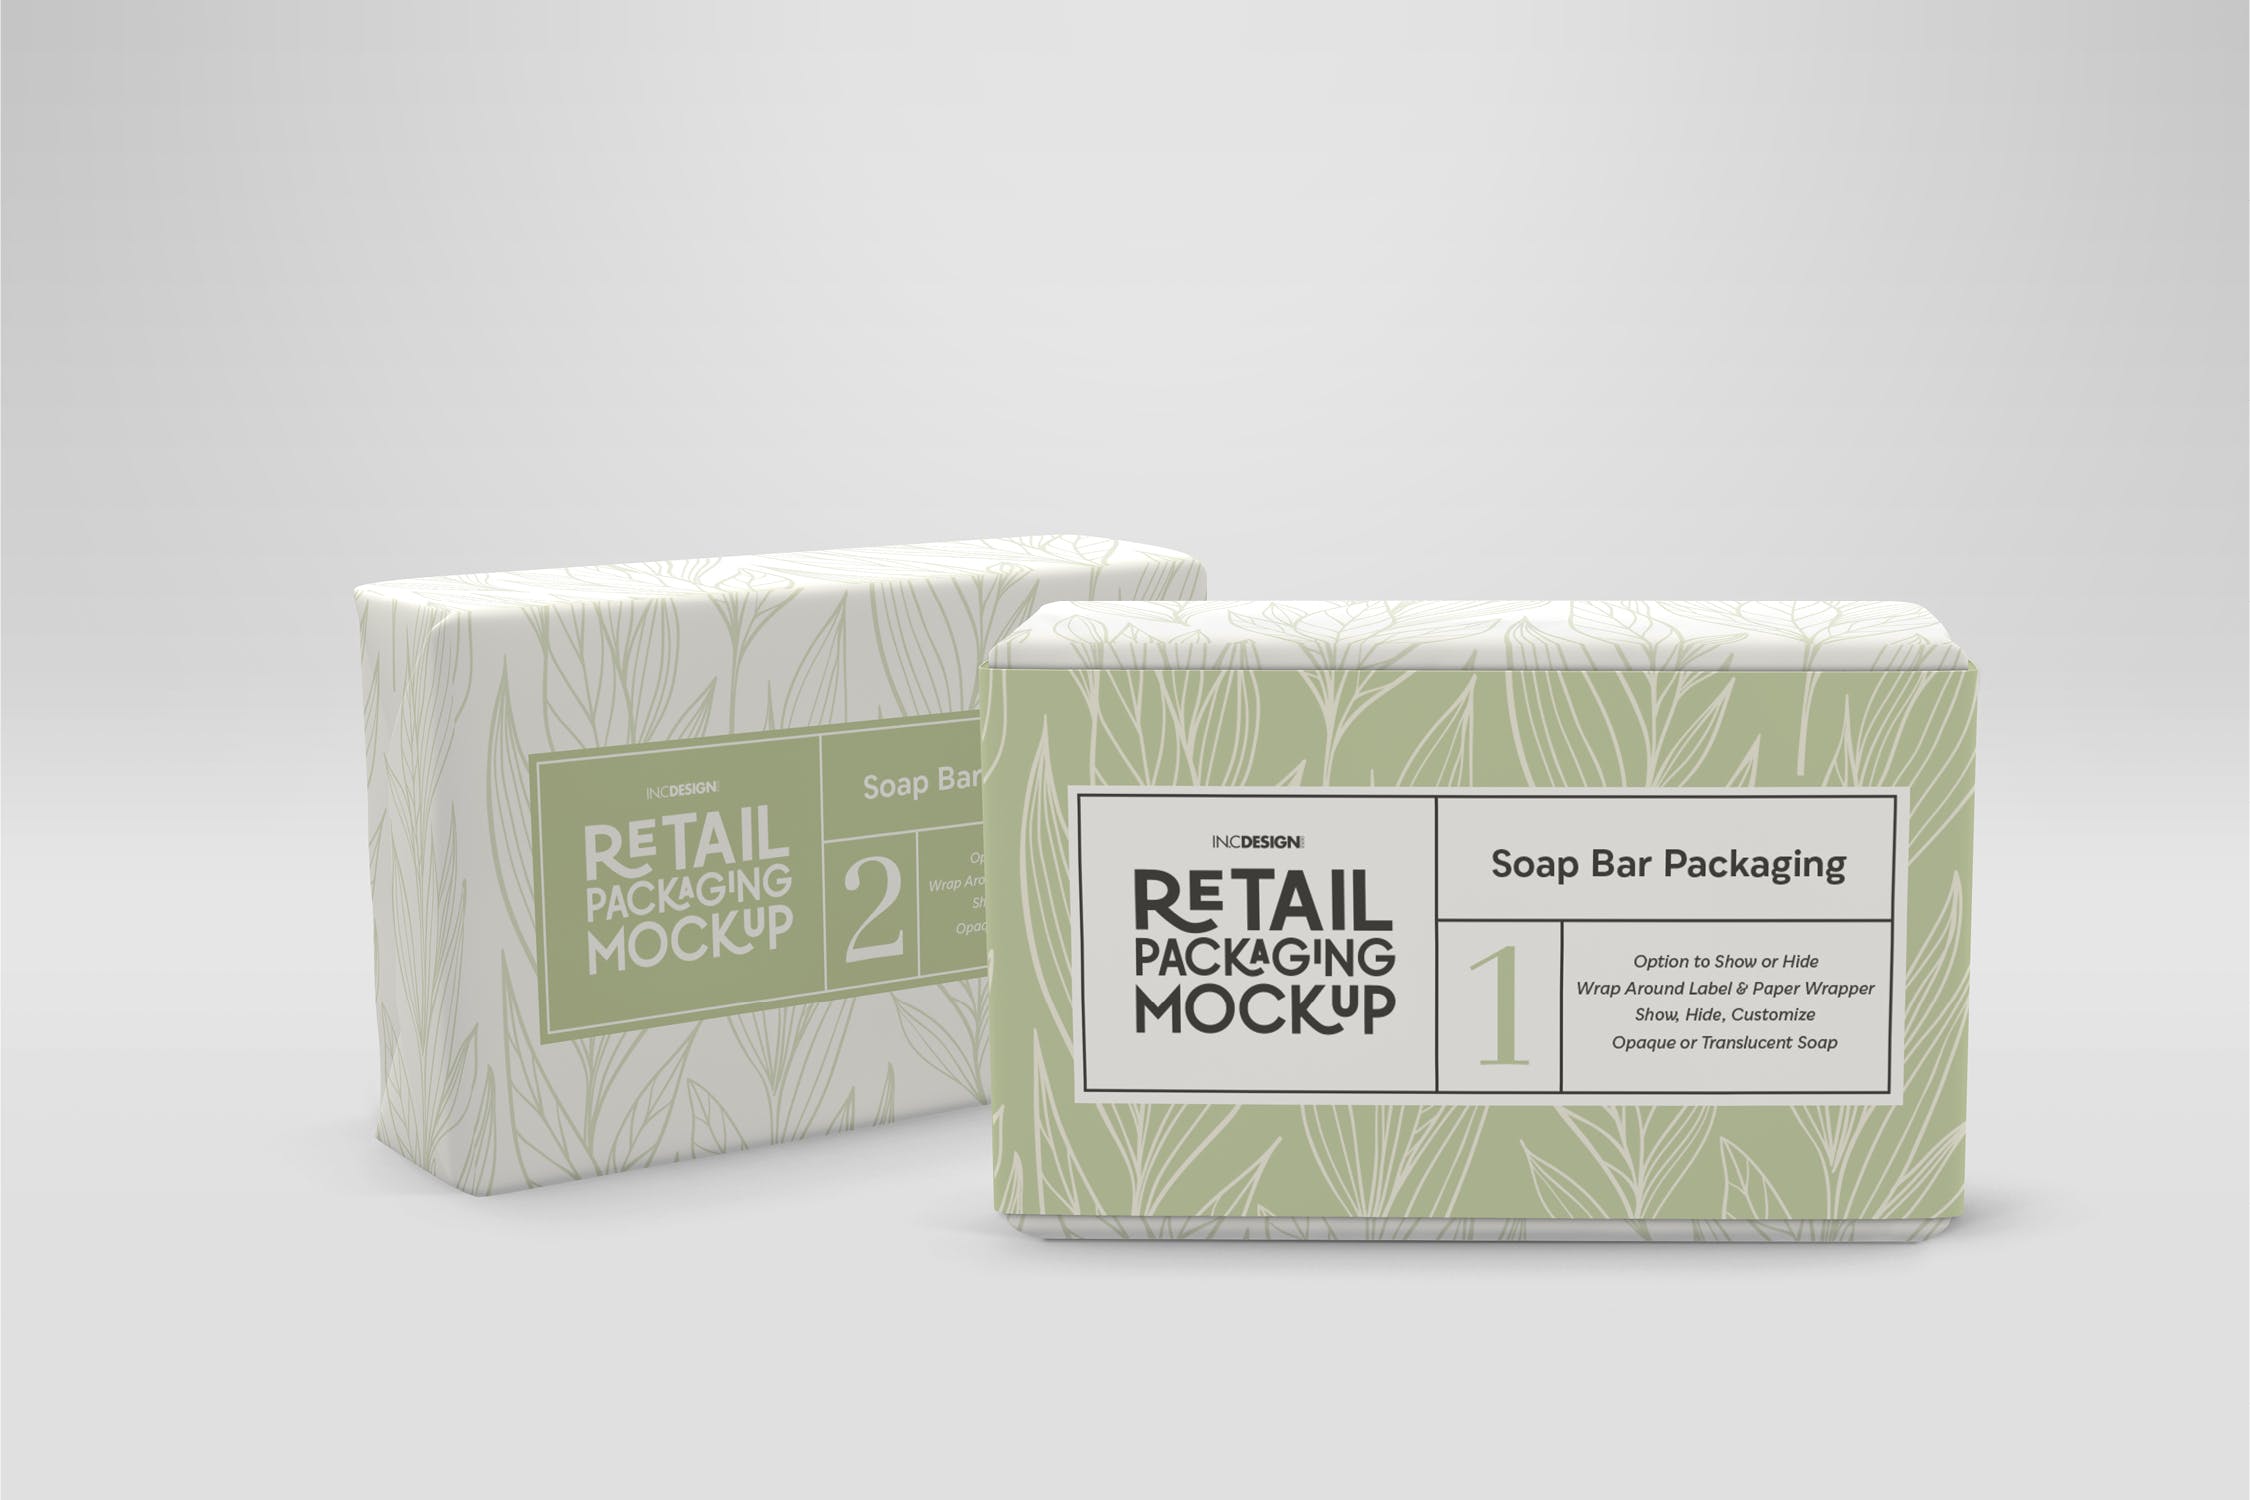 肥皂包装纸袋设计效果图第一素材精选 Retail Soap Bar Packaging Mockup插图(2)